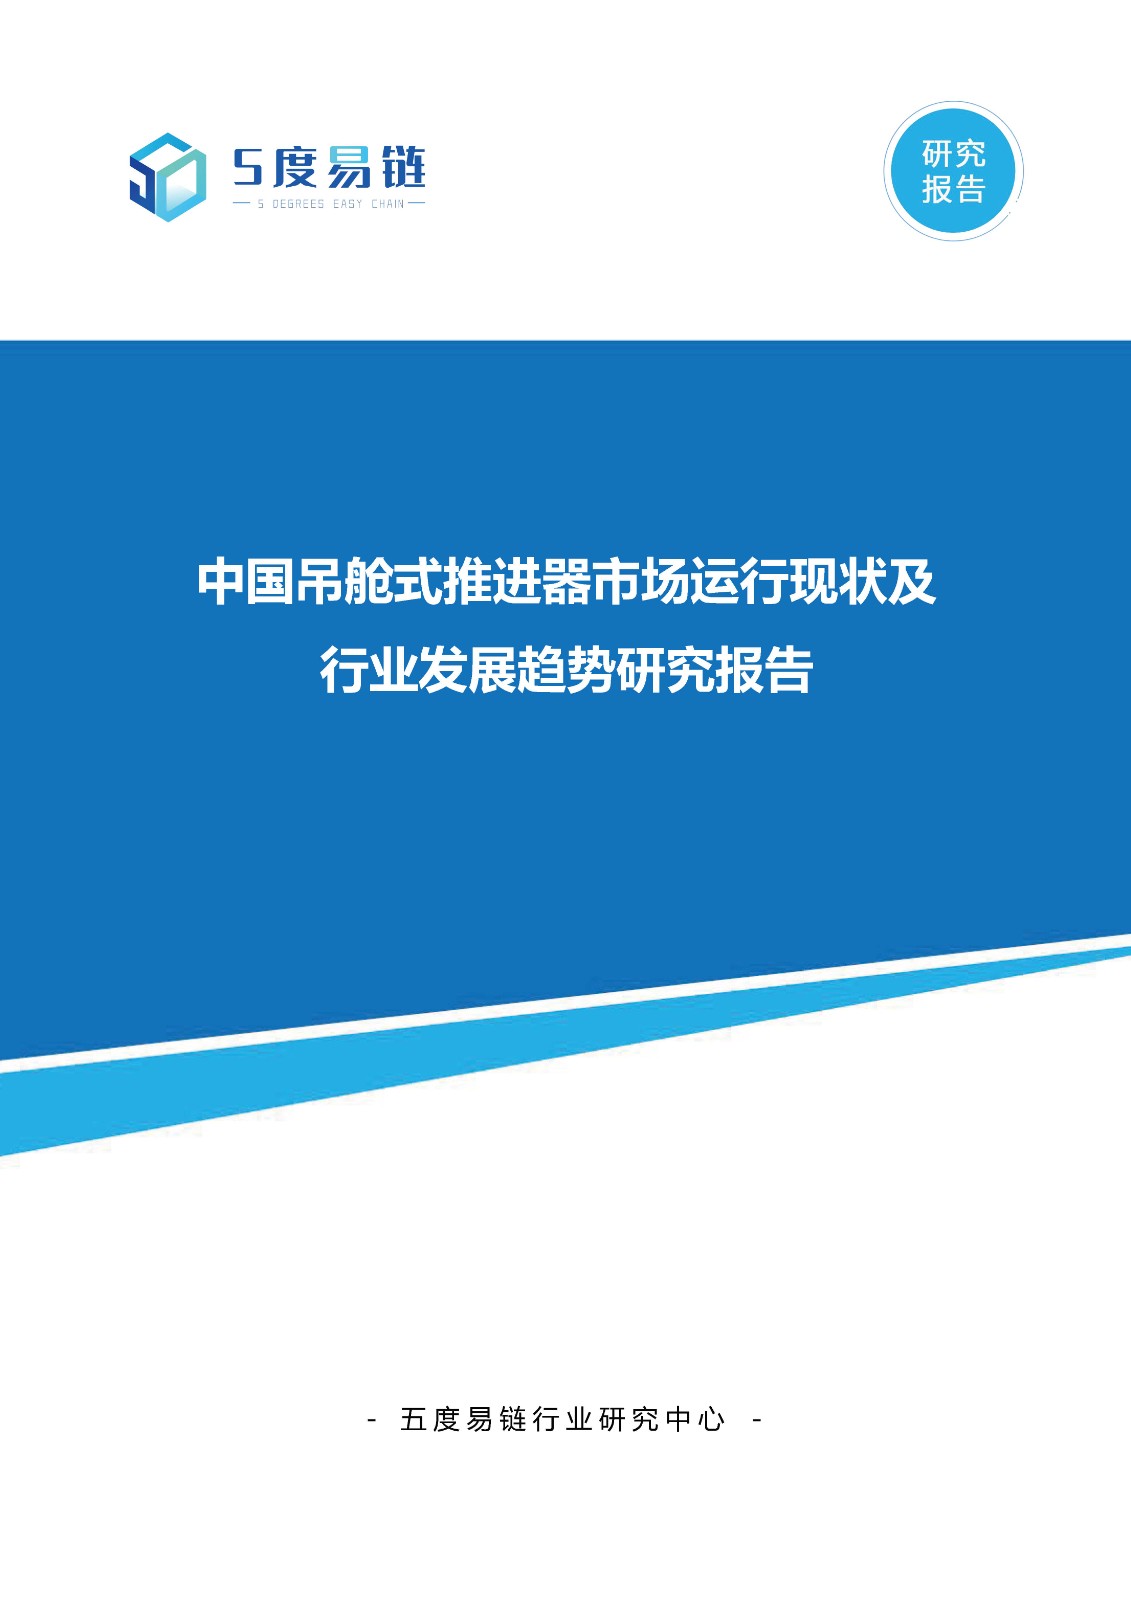 中国吊舱式推进器市场运行现状及行业发展趋势研究报告